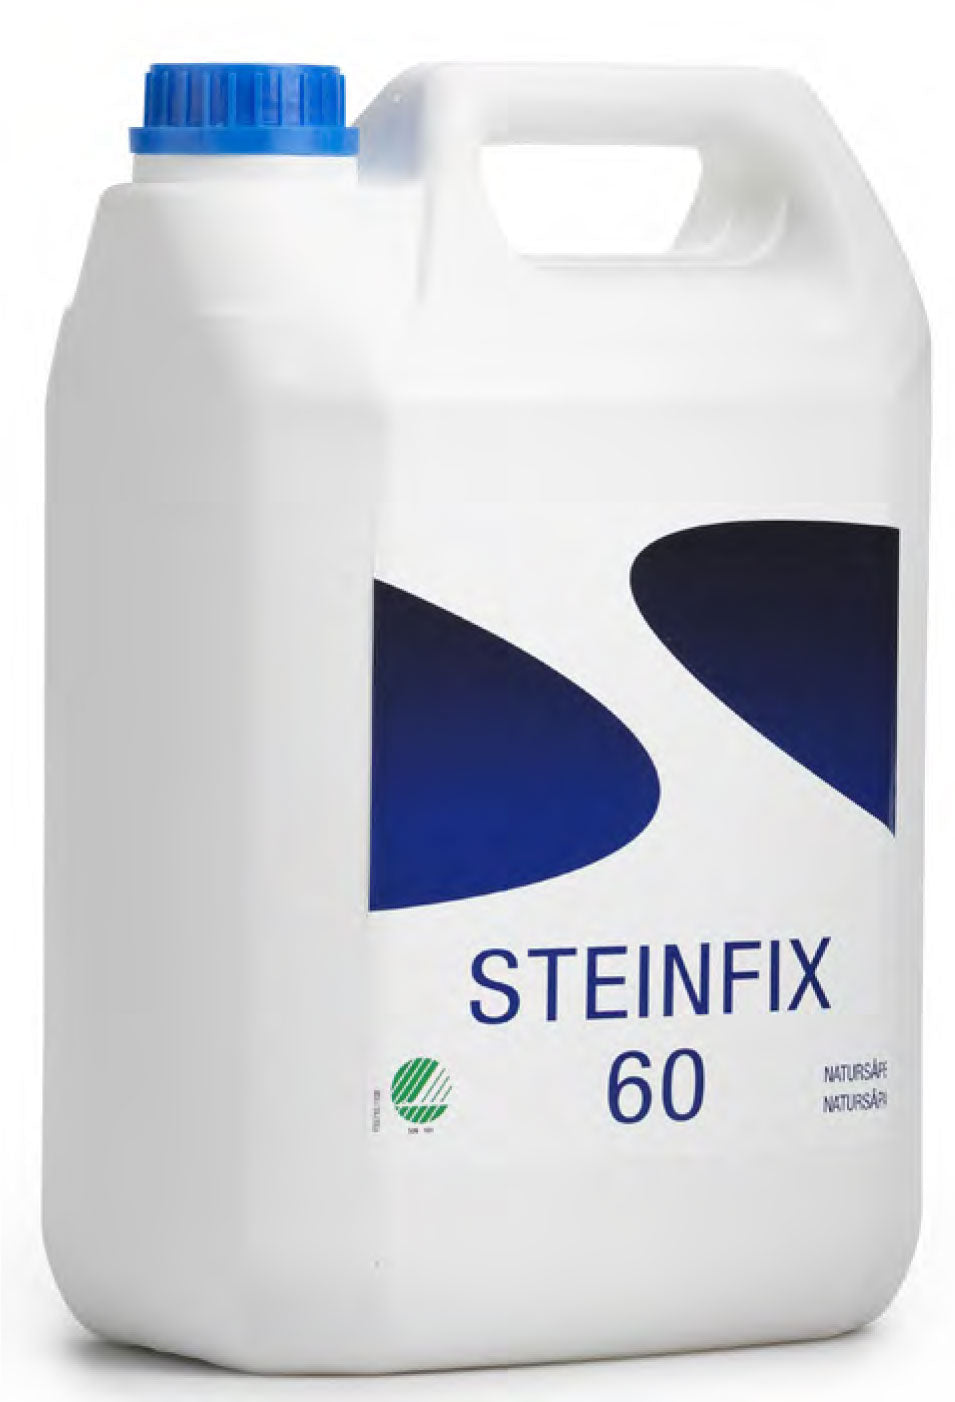 Steinfix 60 Natursåpa, rengöring